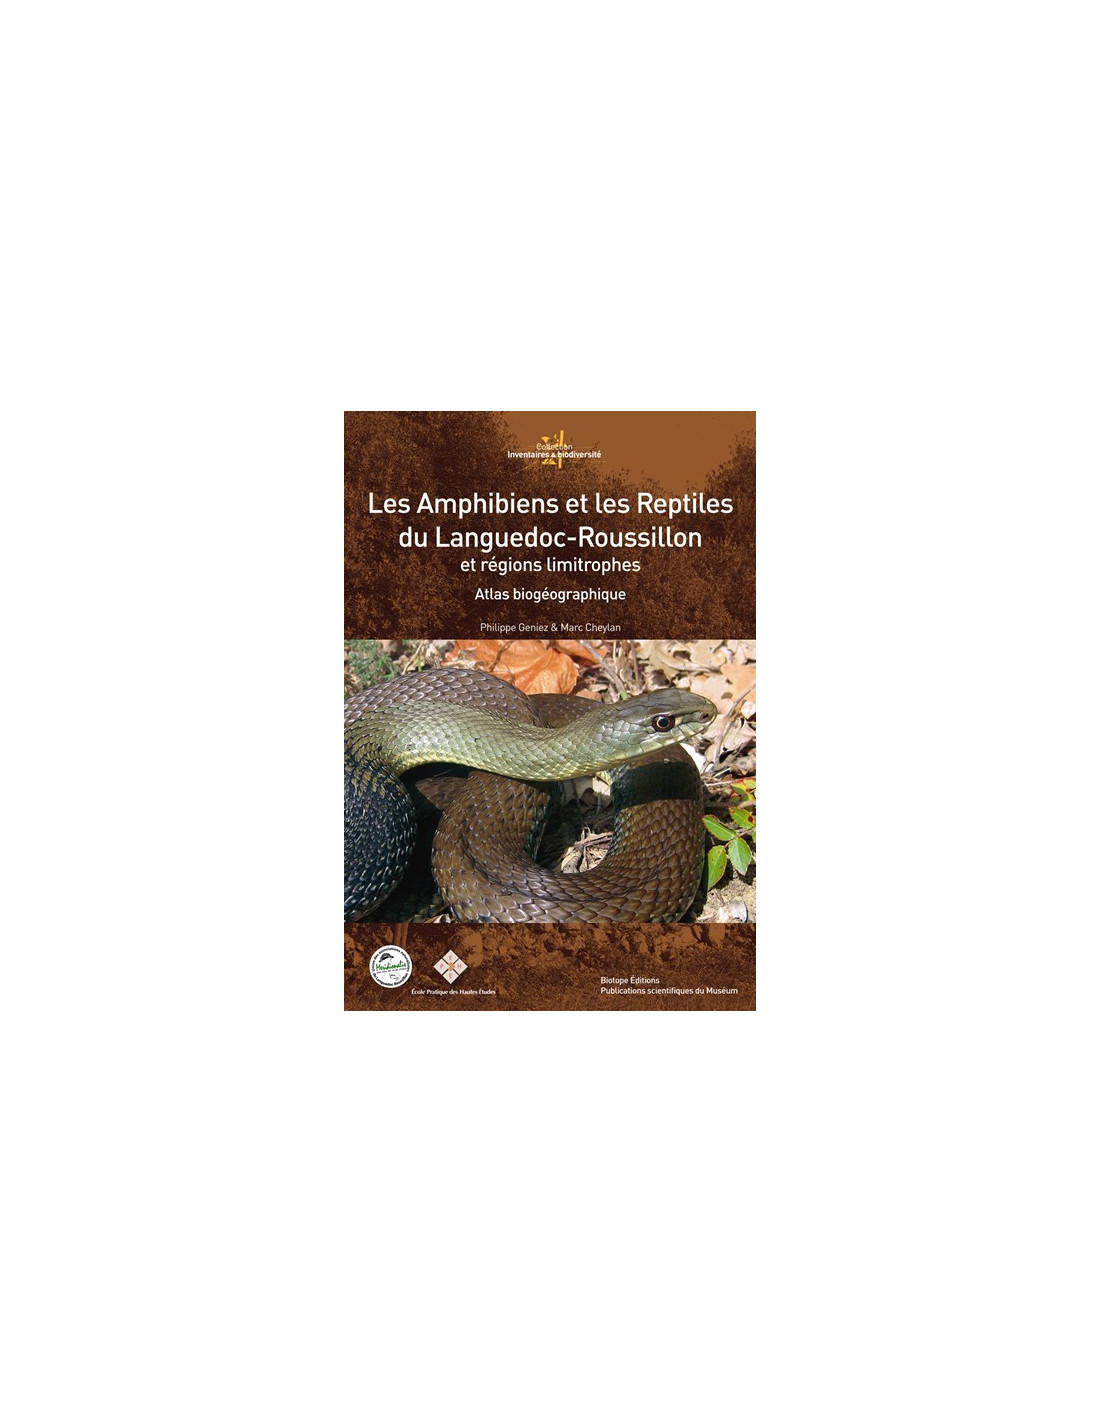 Les amphibiens et reptiles du Languedoc-Roussillon et régions limitrophes